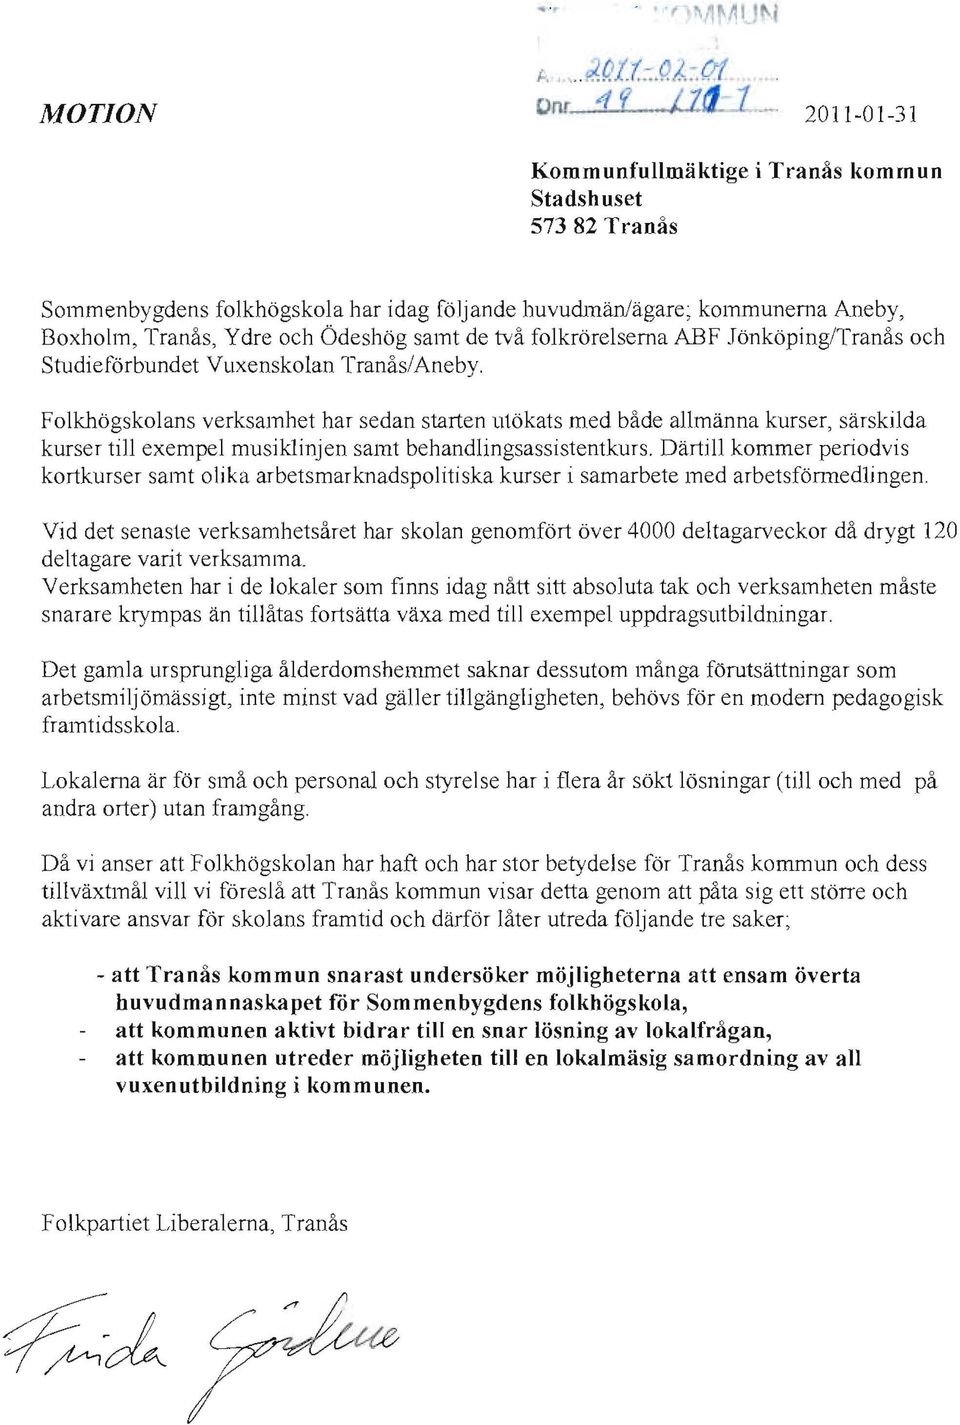 de två folkrörelserna ABF Jönköping/Tranås och Studieförbundet Vuxenskolan Tranås/Aneby.